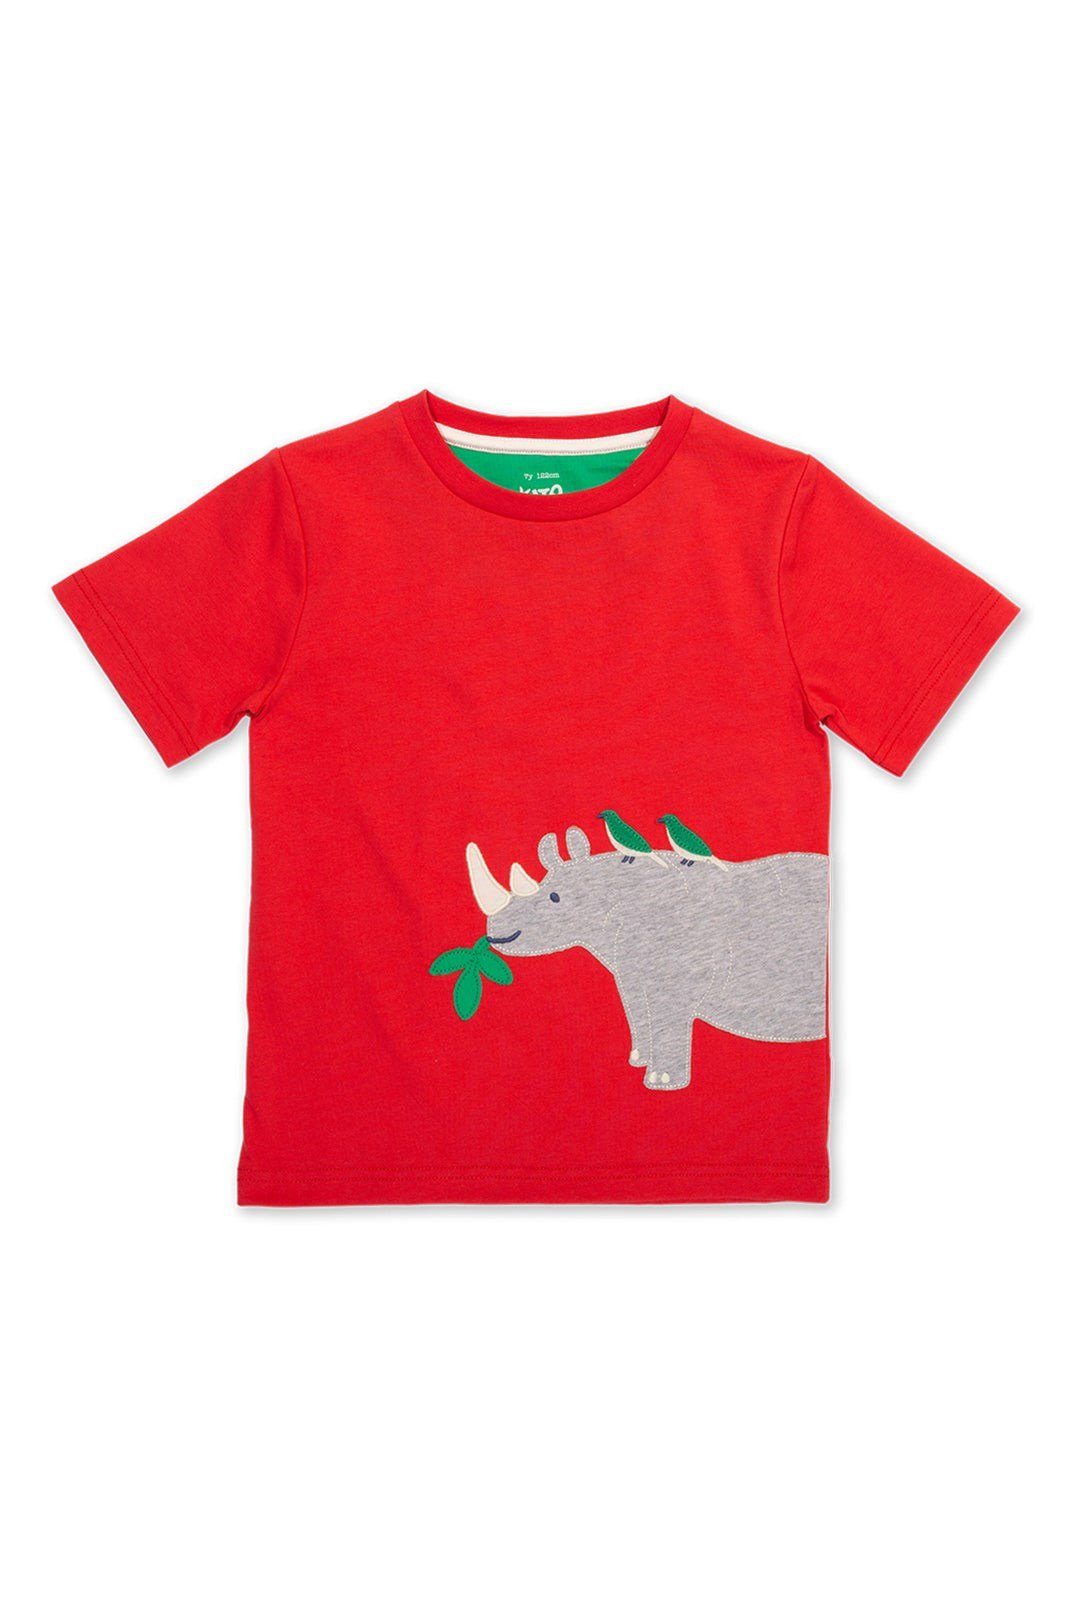 Rhino Pals Baby/Kids Organic Cotton T-Shirt -